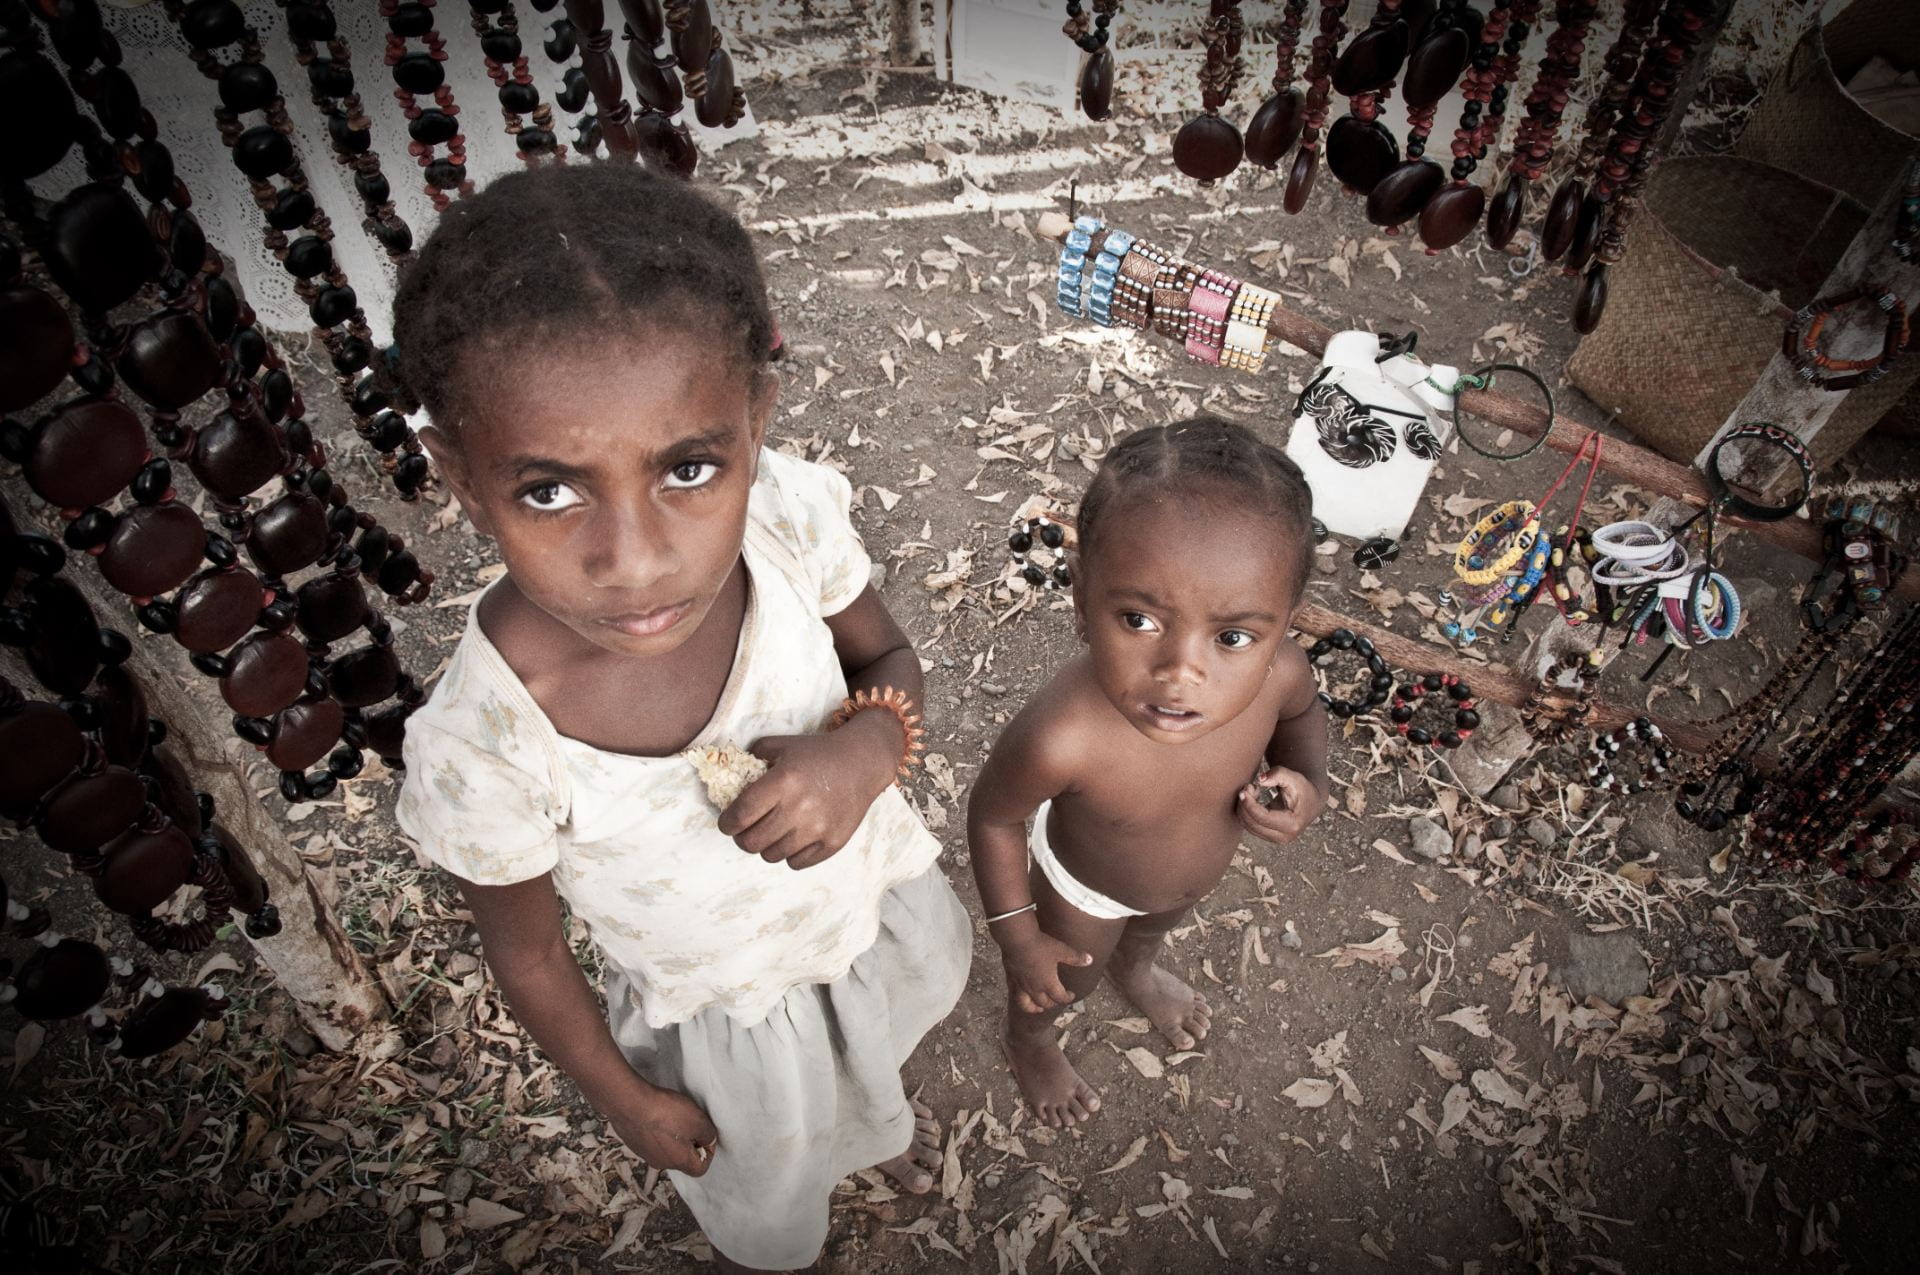 Children in Monrovia. Source: Giorgio Minguzzi, Creative Commons 